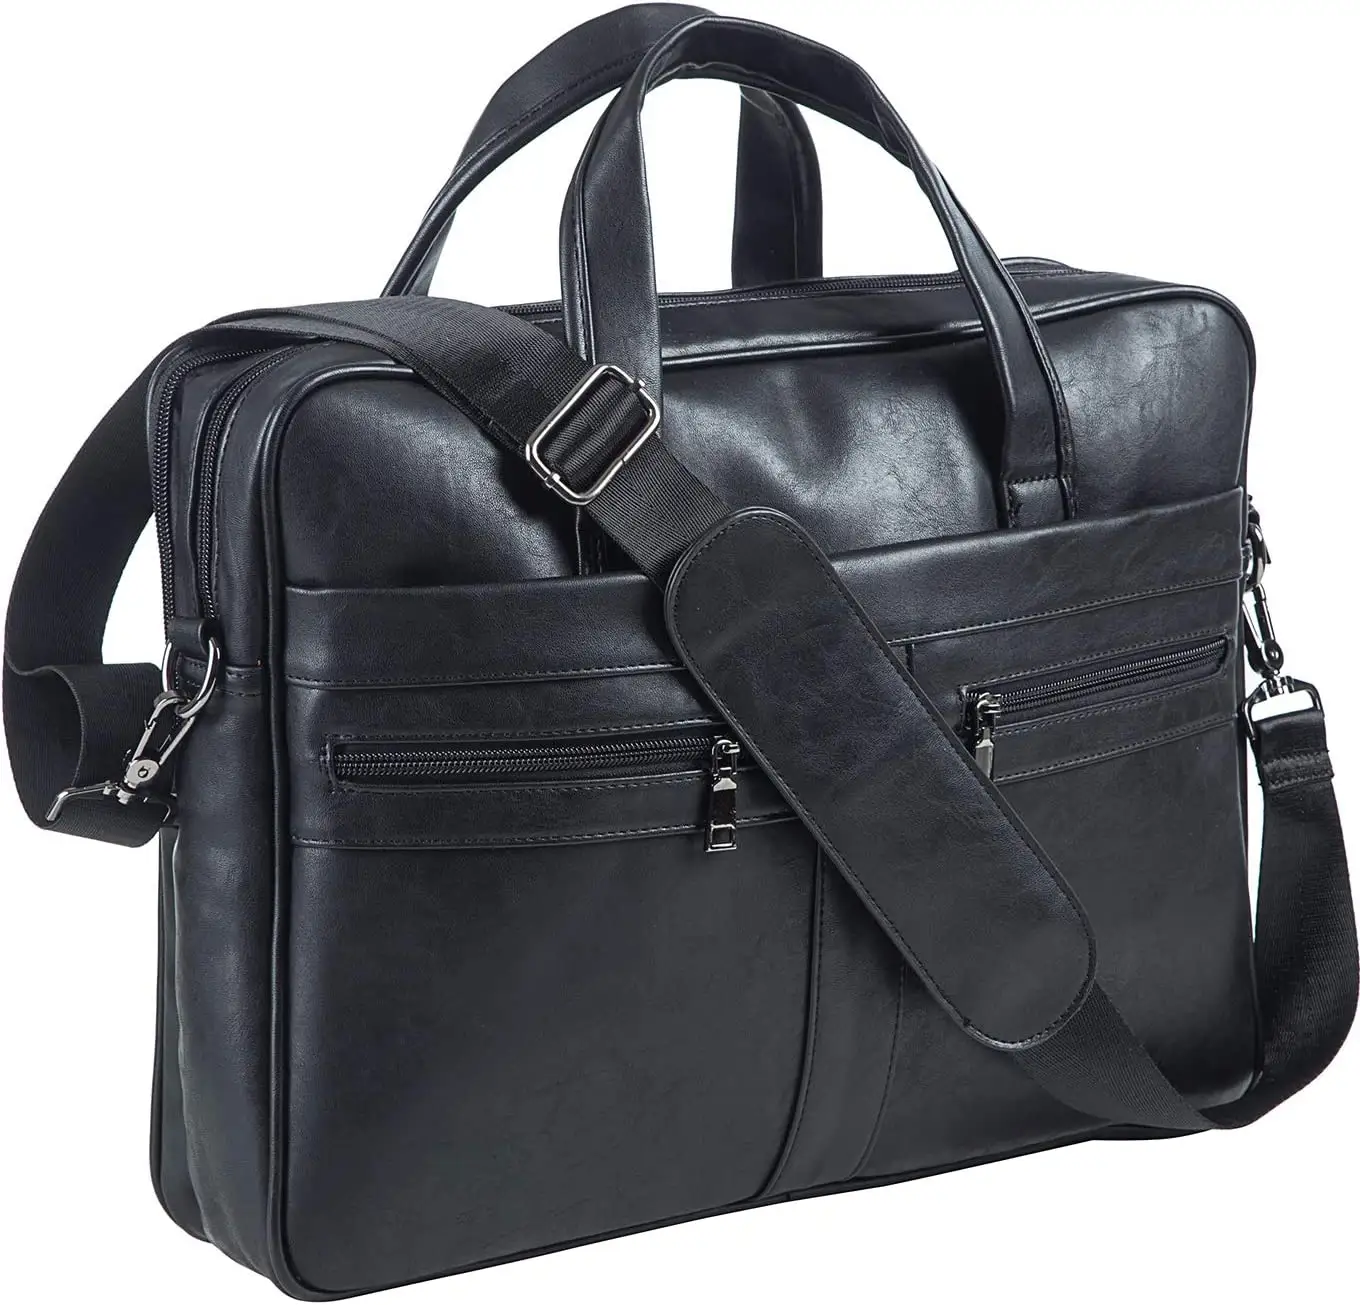 Leather Messenger Bag 15.6 Inches Laptop Briefcase Business Satchel Computer Handbag Shoulder Bag